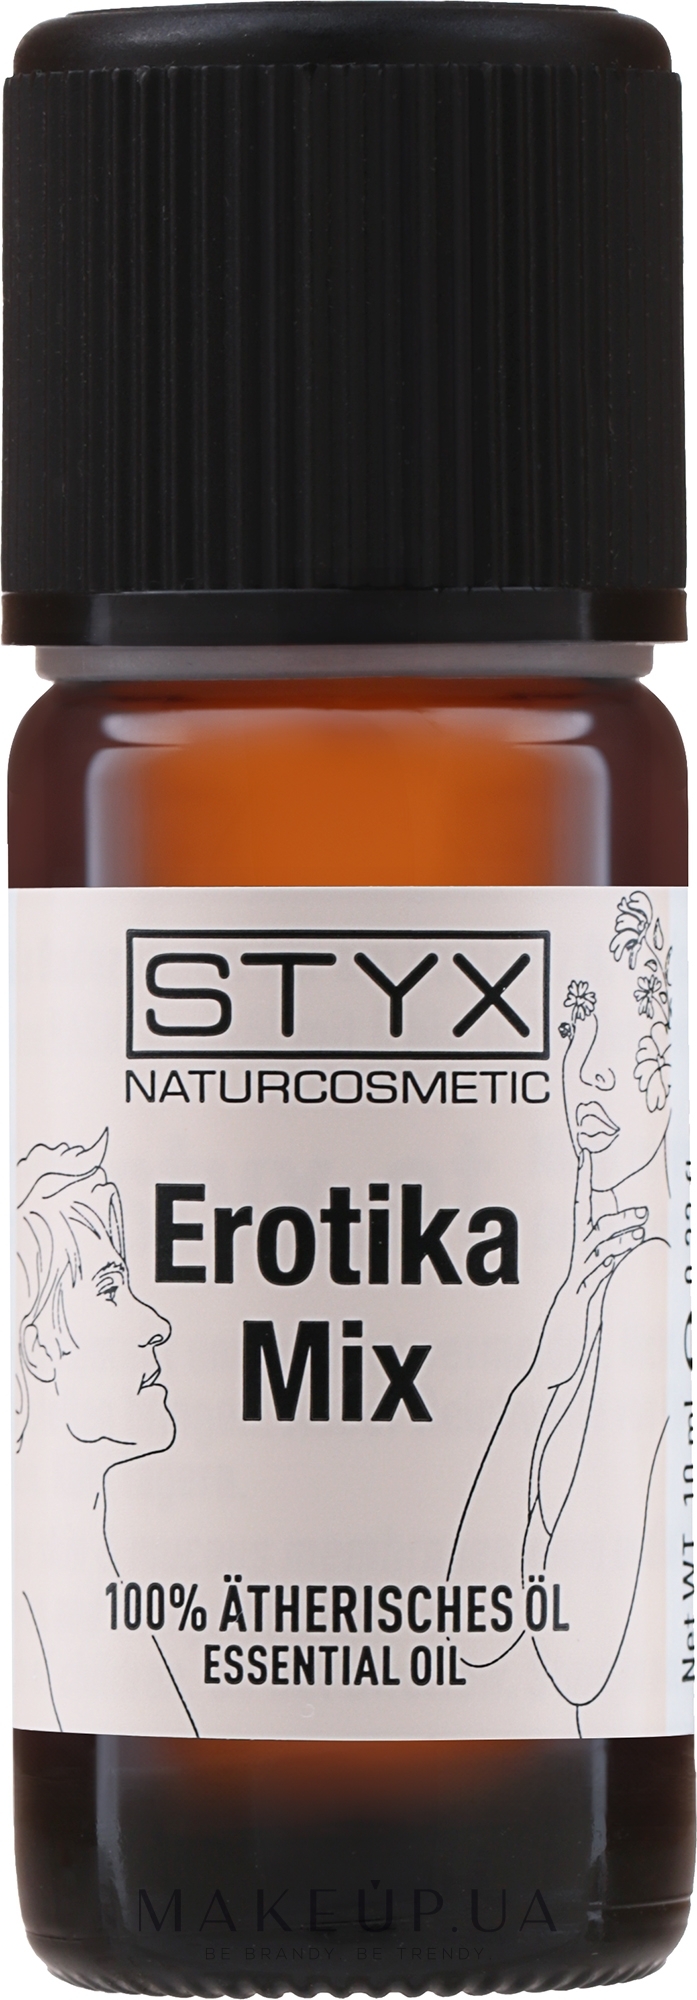 Styx Naturcosmetic Erotica Mix - Эфирное масло 